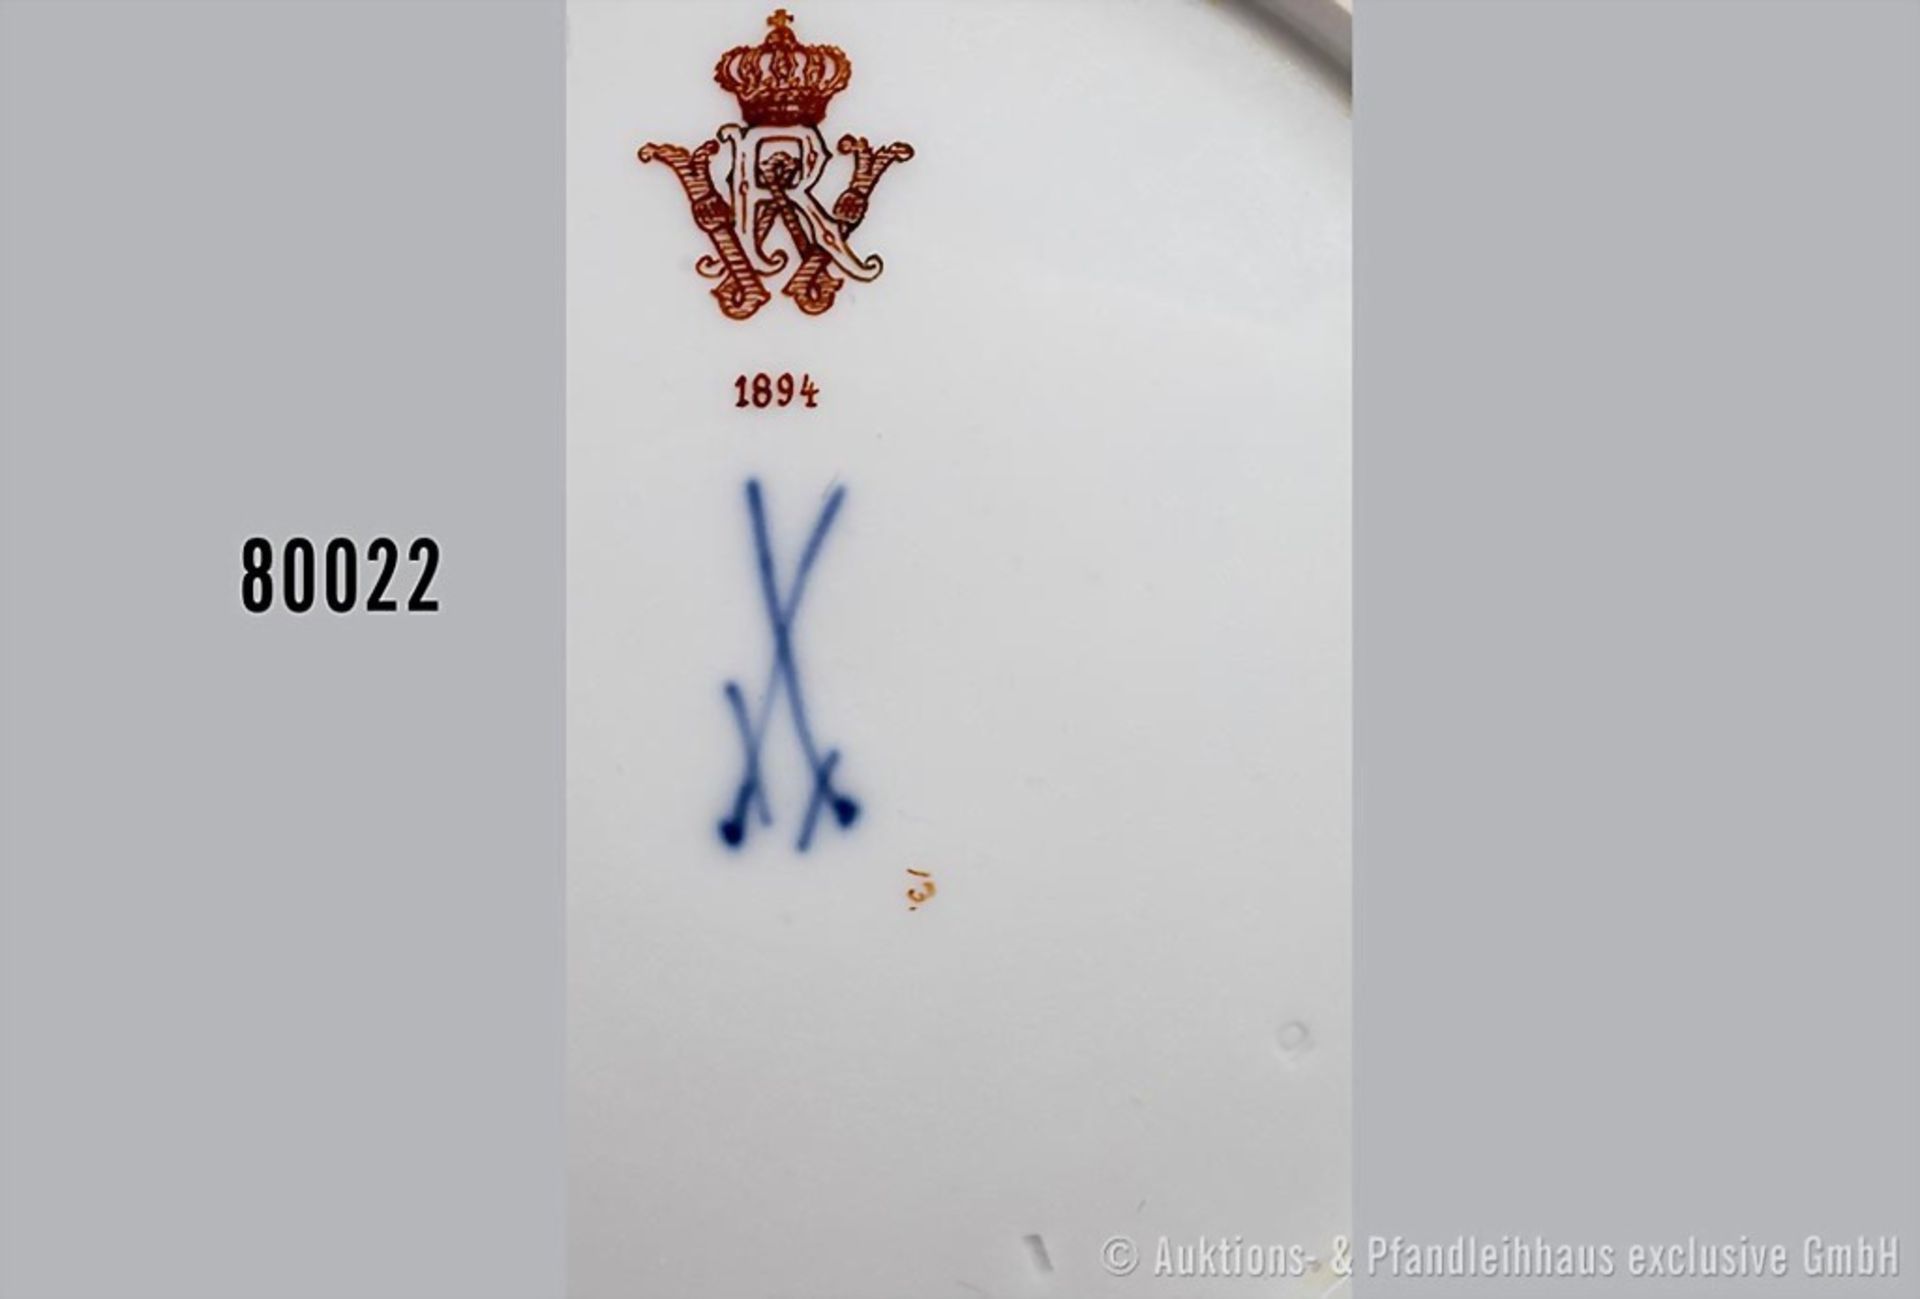 Konv. Porzellan flacher Teller, D 24 cm und Suppenteller, D 23 cm, Meissen, aus dem ... - Bild 3 aus 3